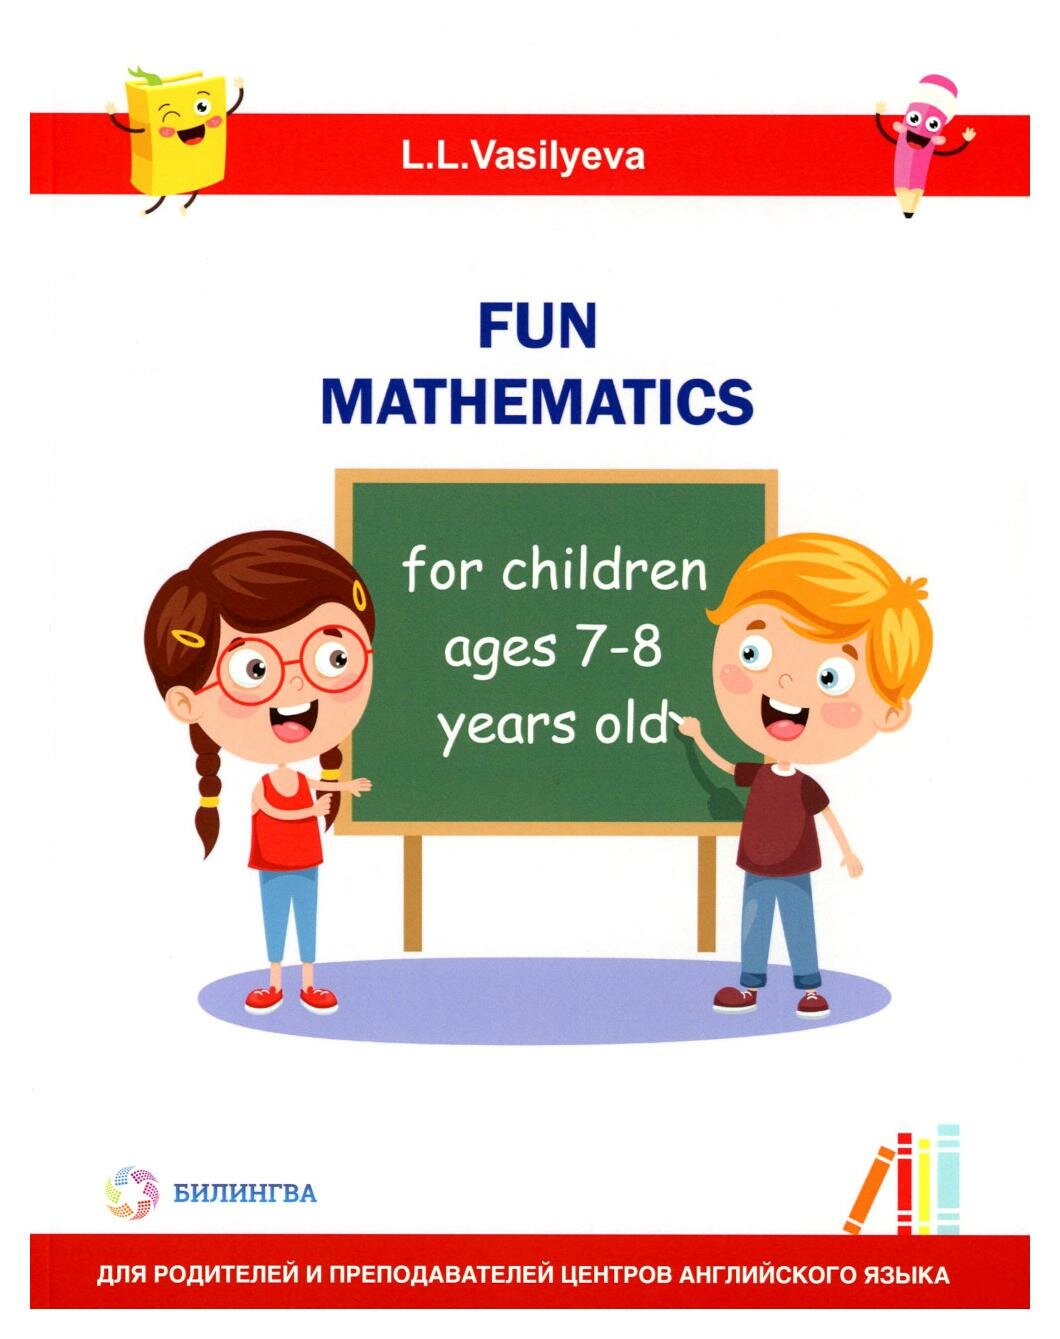 Занимательная математика для детей 7-8 лет - фото №1